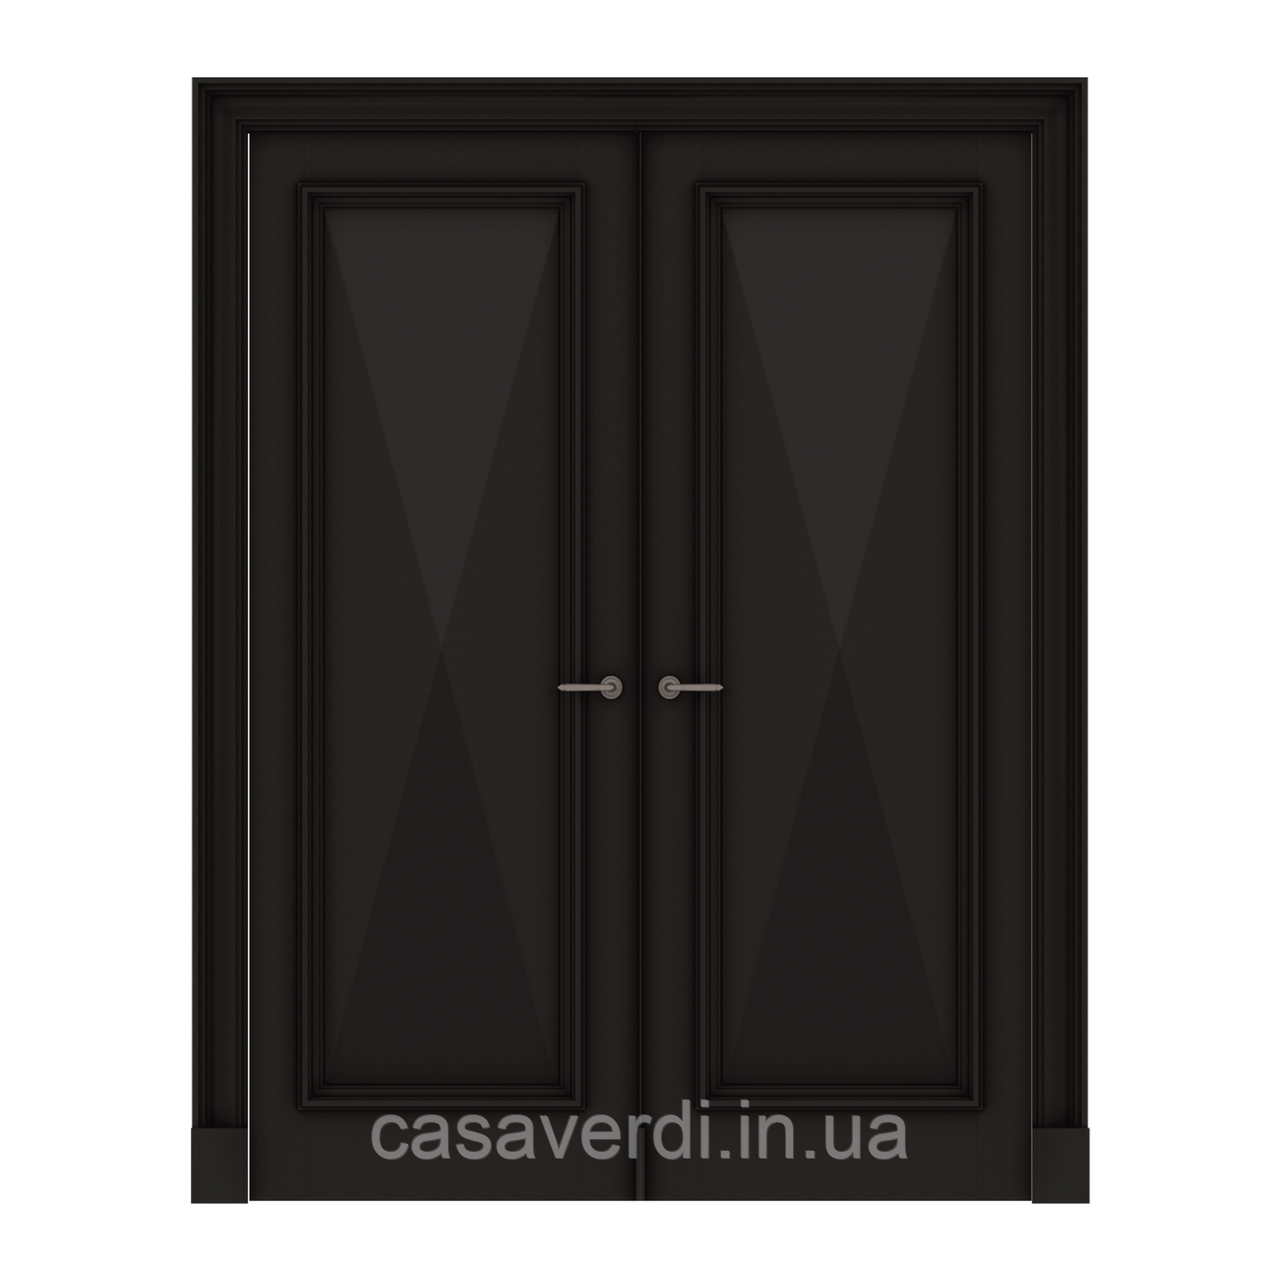 Межкомнатная дверь Casa Verdi Rombo 5 двойная распашная из массива ясеня